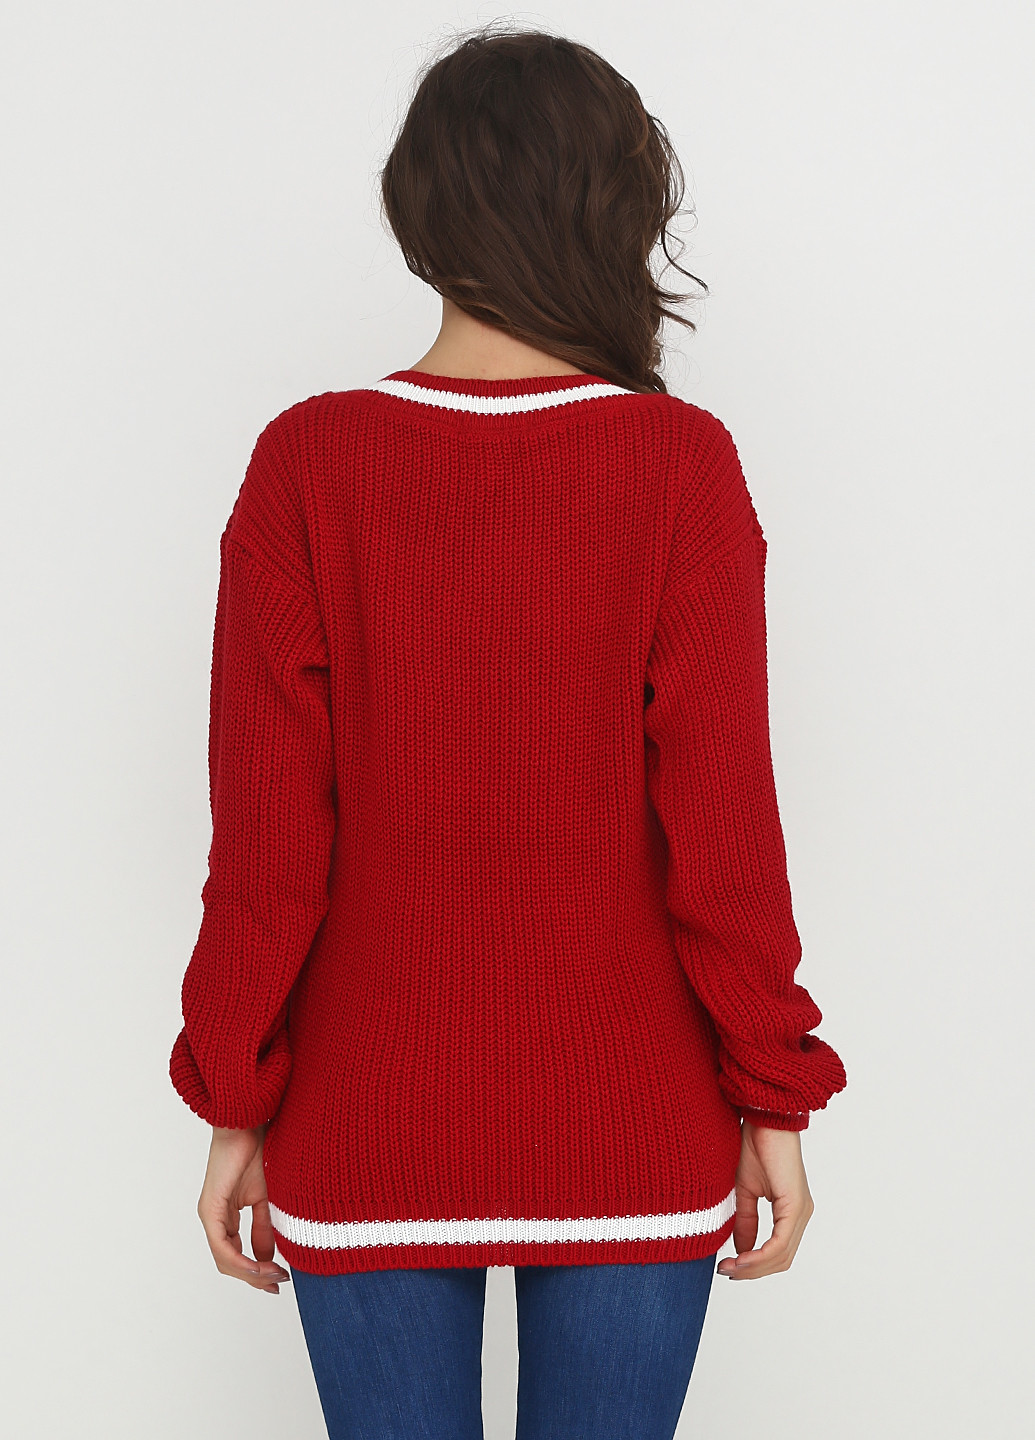 Темно-красный демисезонный пуловер пуловер Zaldiz